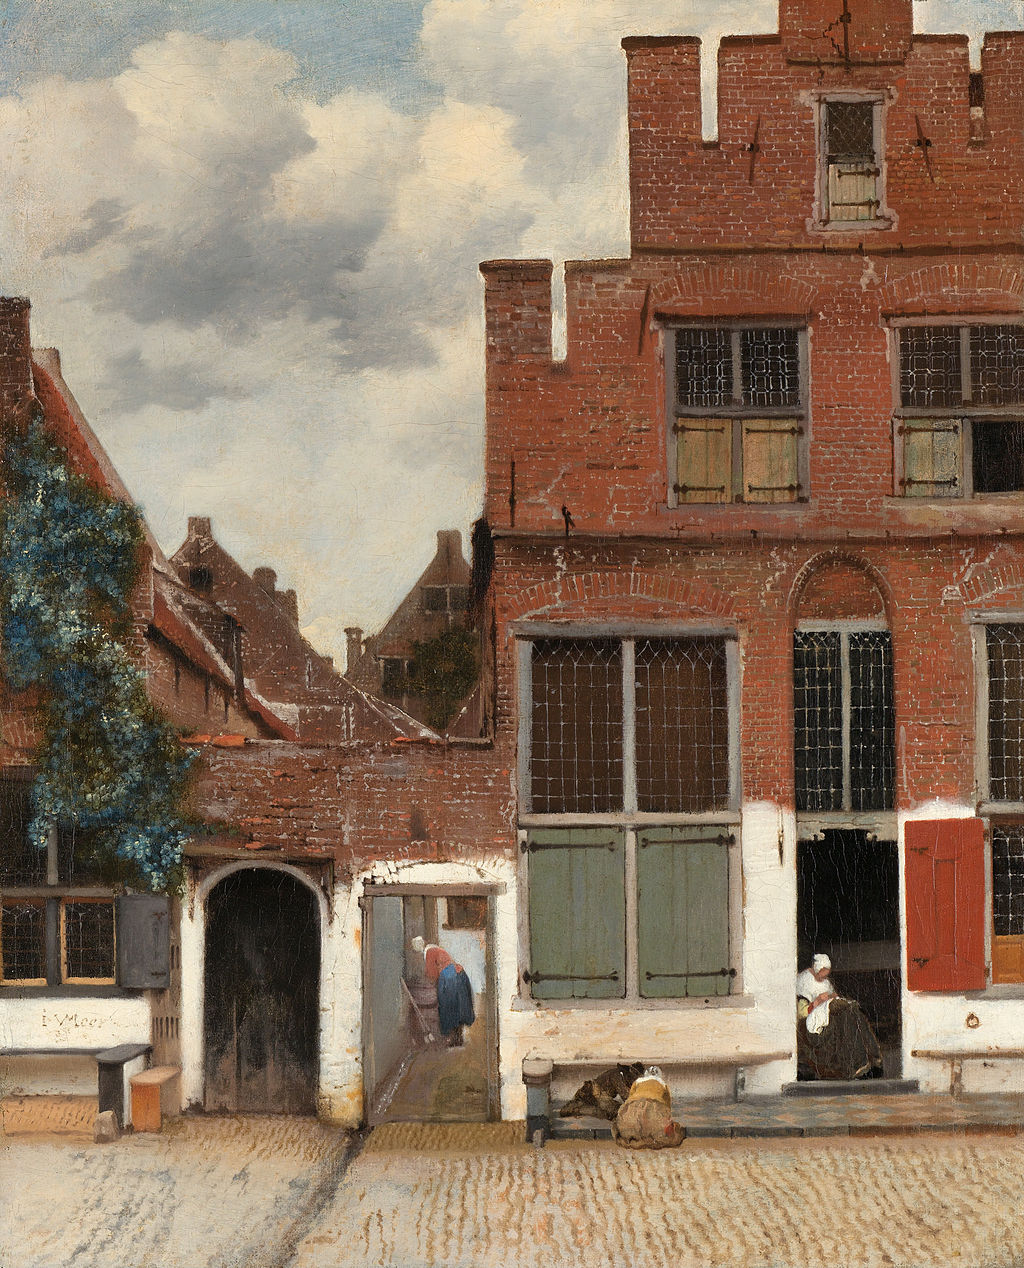 1024px-Johannes_Vermeer_-_Gezicht_op_huizen_in_Delft,_bekend_als_'Het_straatje'_-_Google_Art_Project.jpg